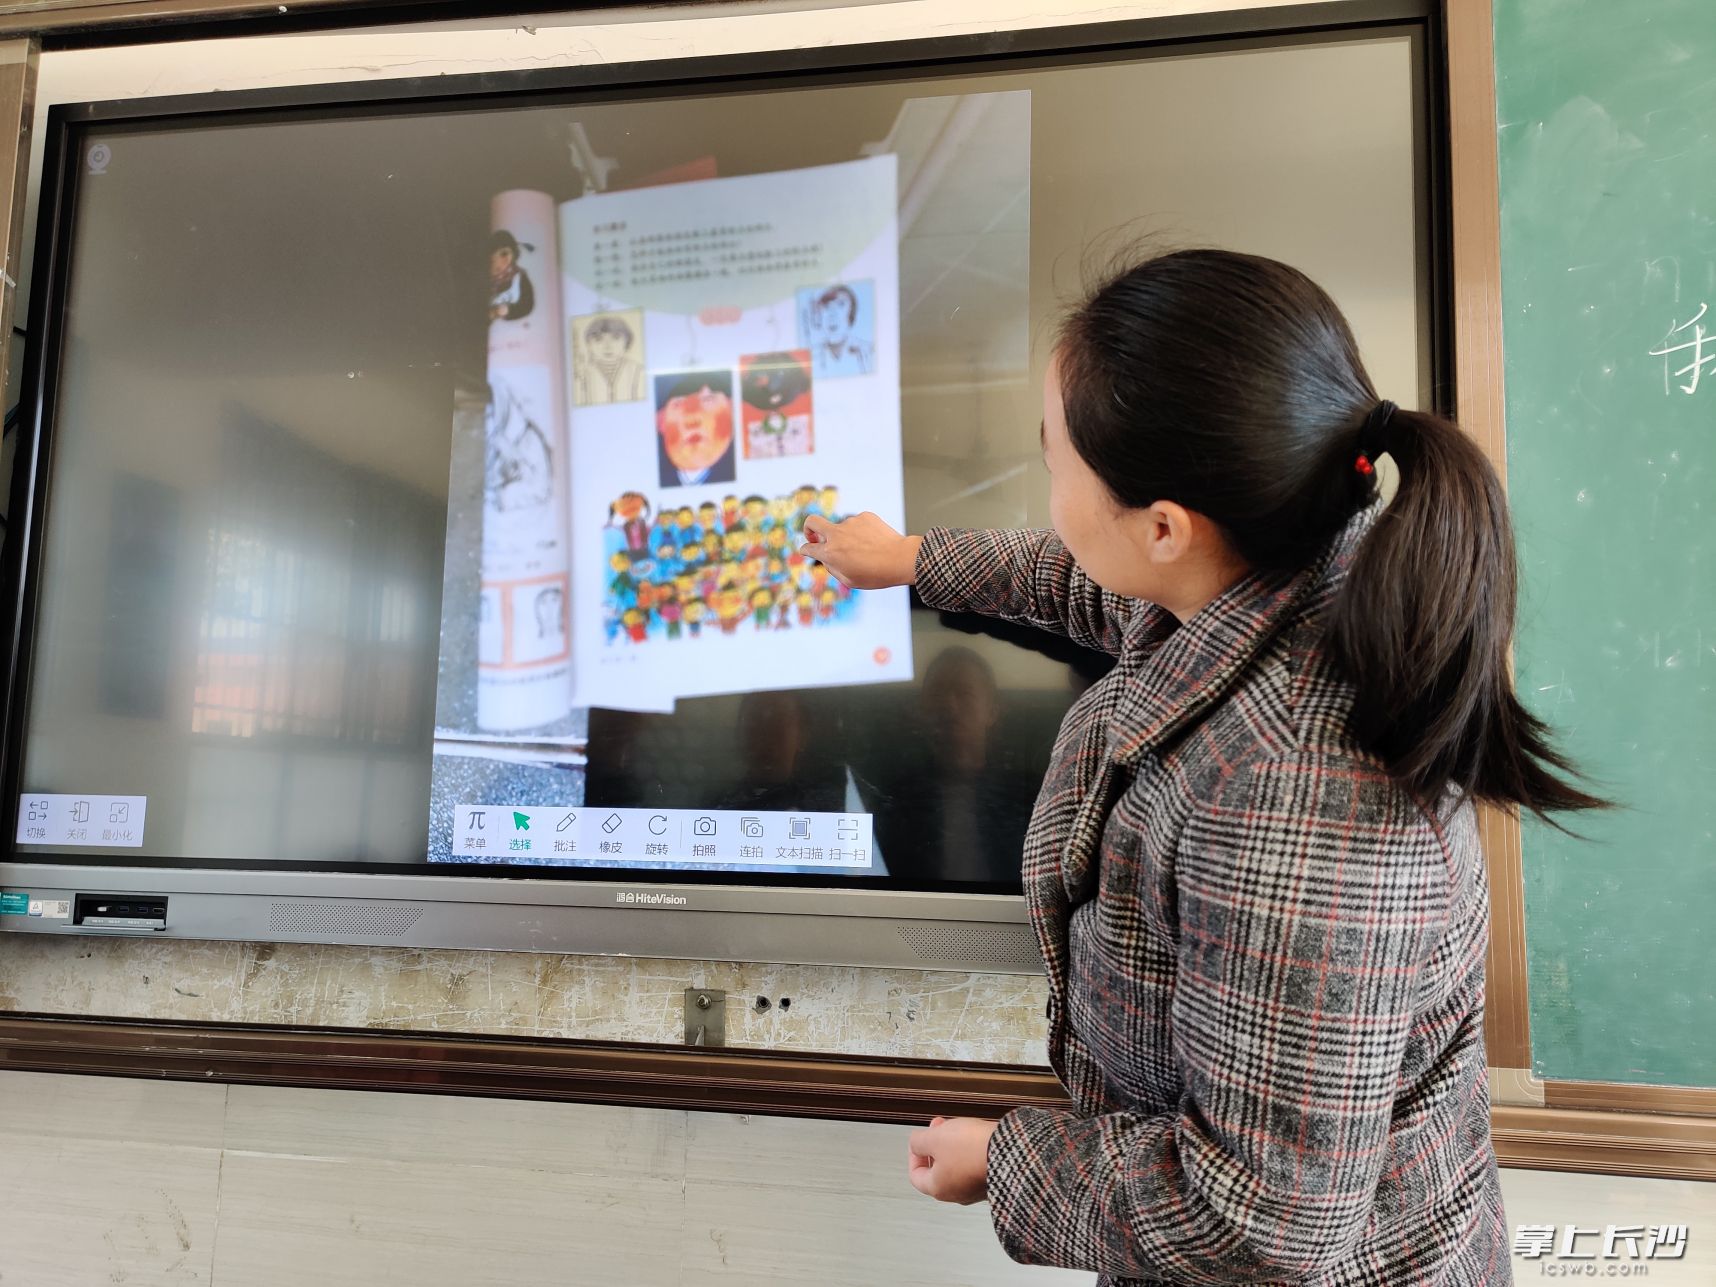 彭莲花老师正在展示教室里的“班班通”。